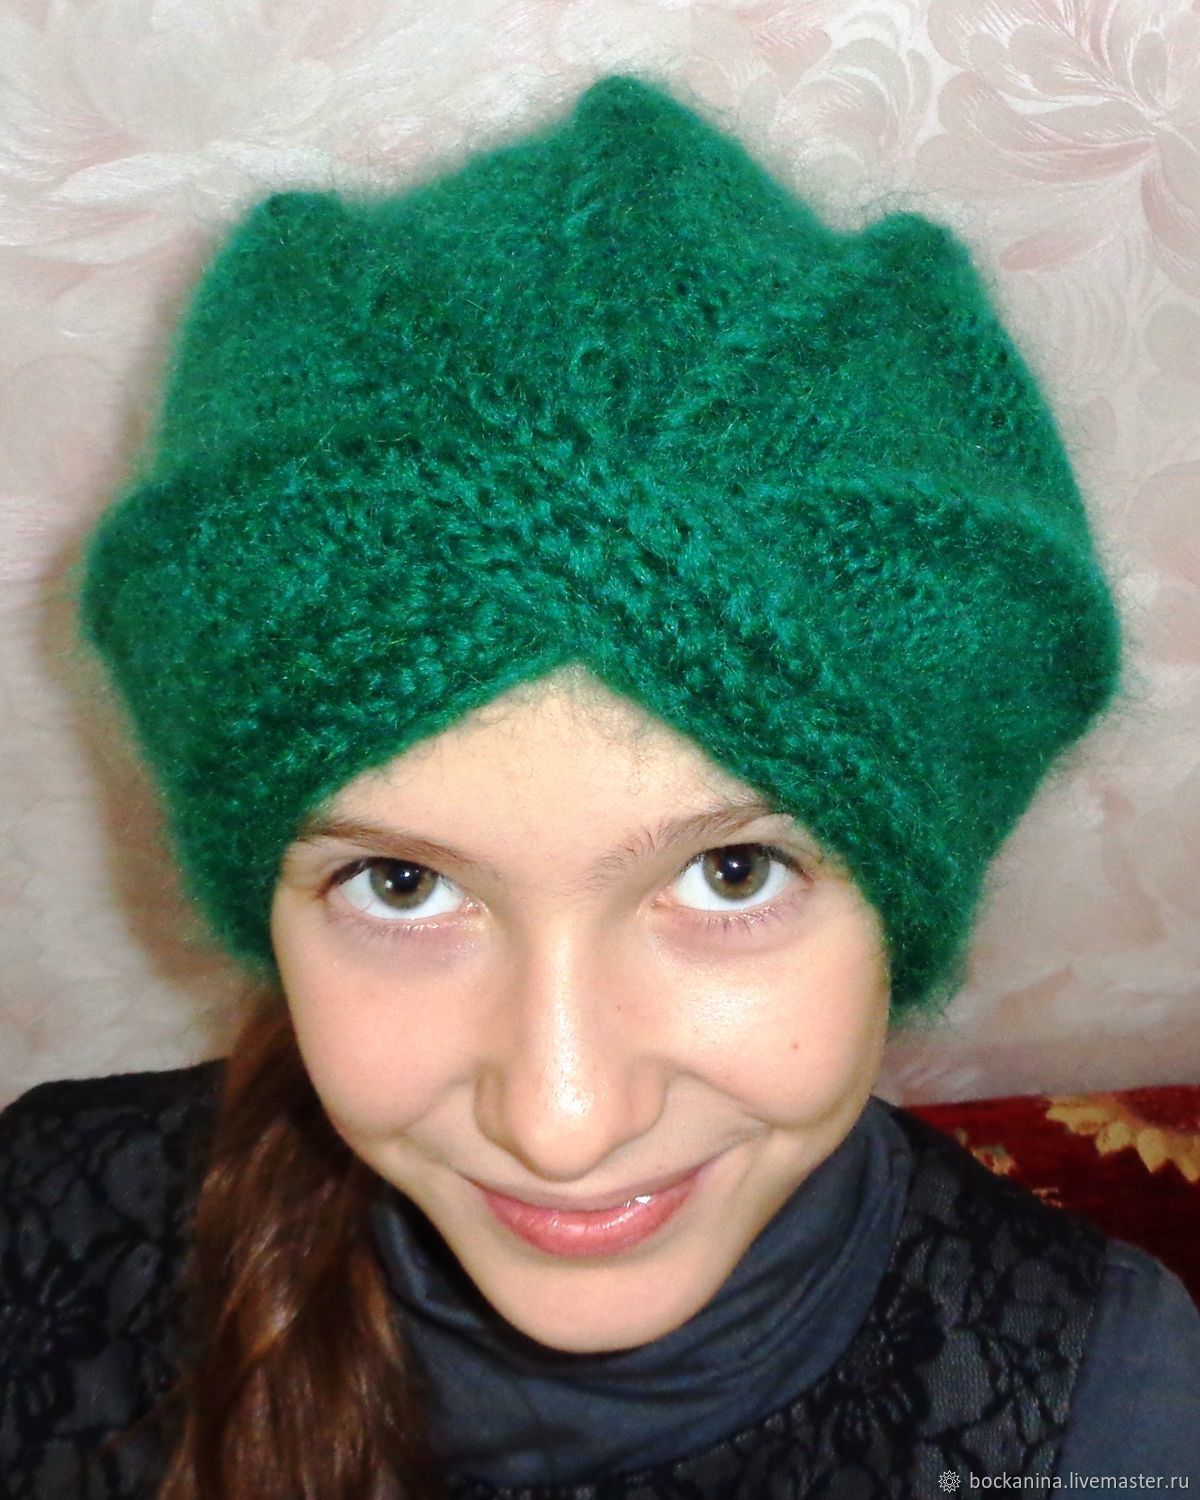 Женская шапка- чалма, спицами из мохера, зелёная